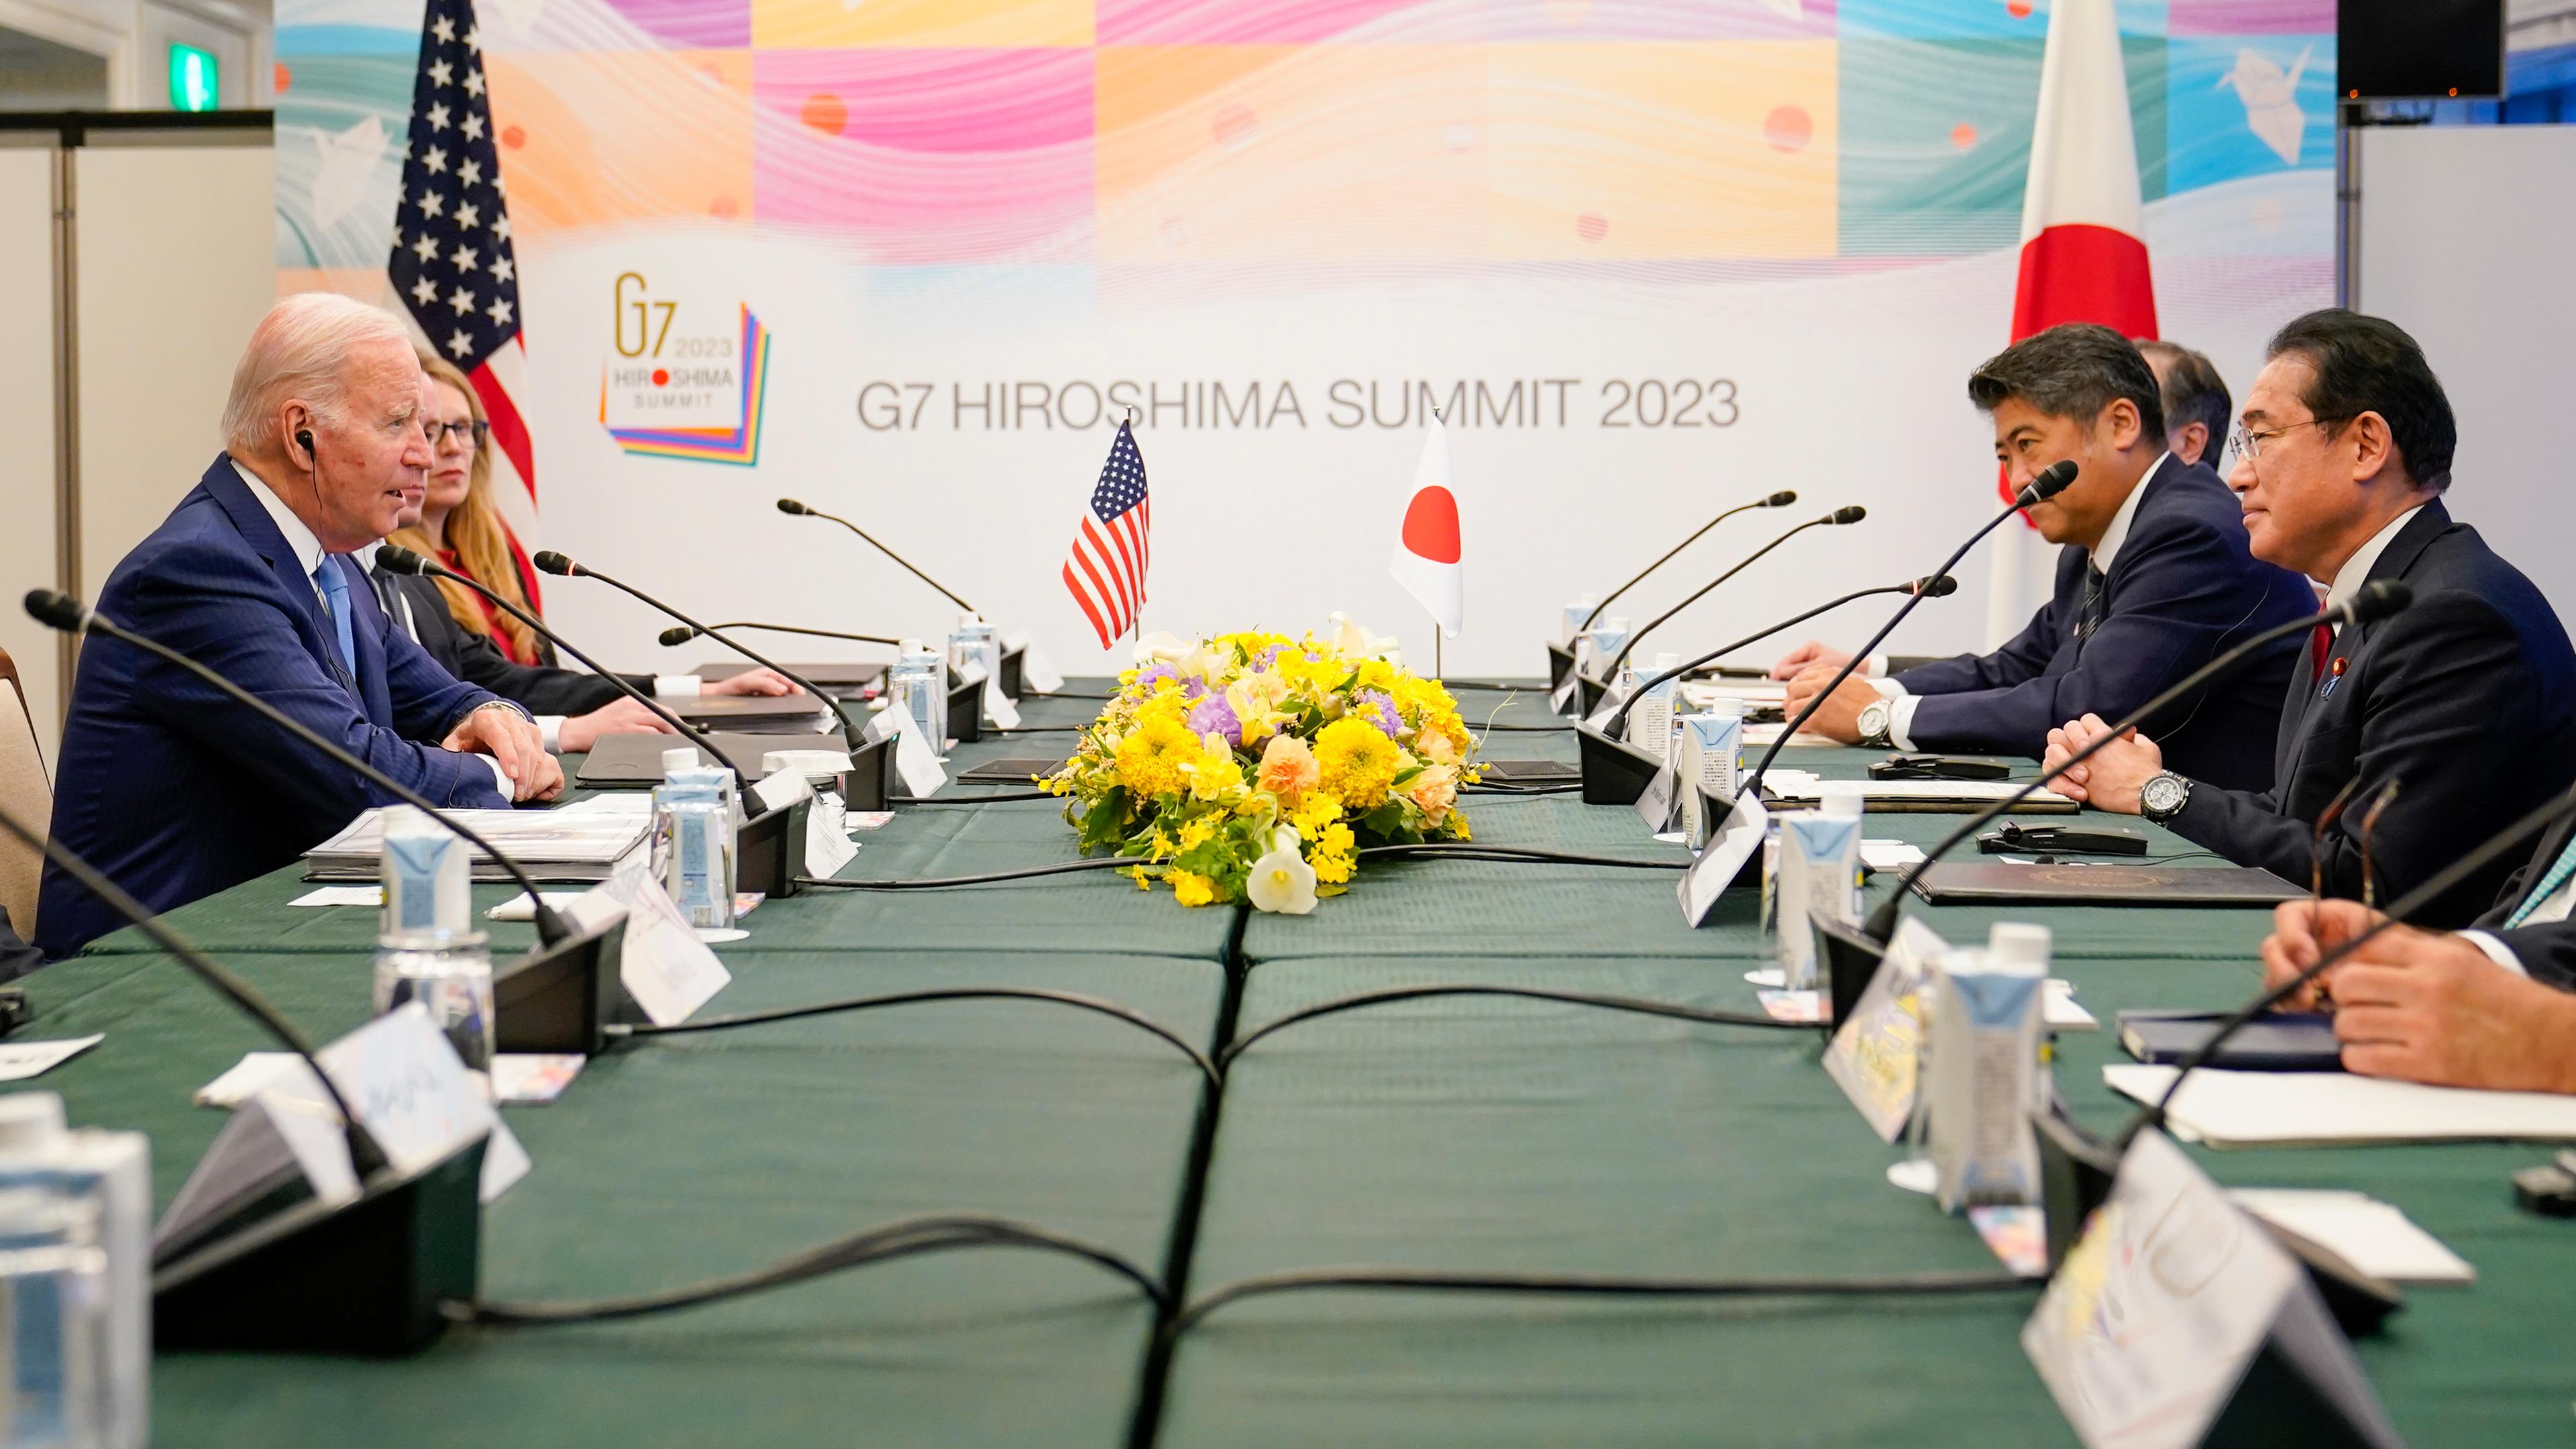 Zu sehen ist ene US-amerikanische Delegation mit Präsident Joe Biden im Gespräch mit der japanischen Delegation.